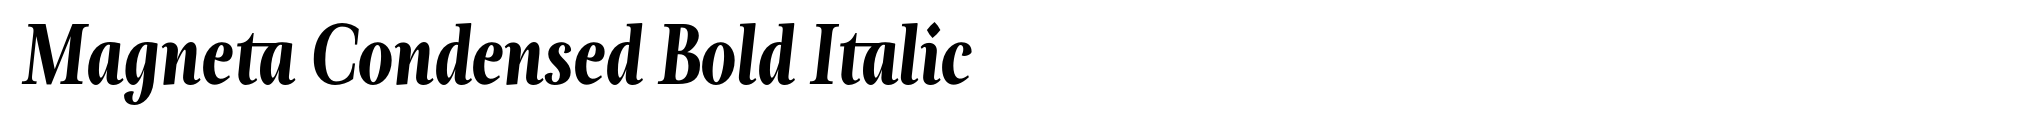 Magneta Condensed Bold Italic image